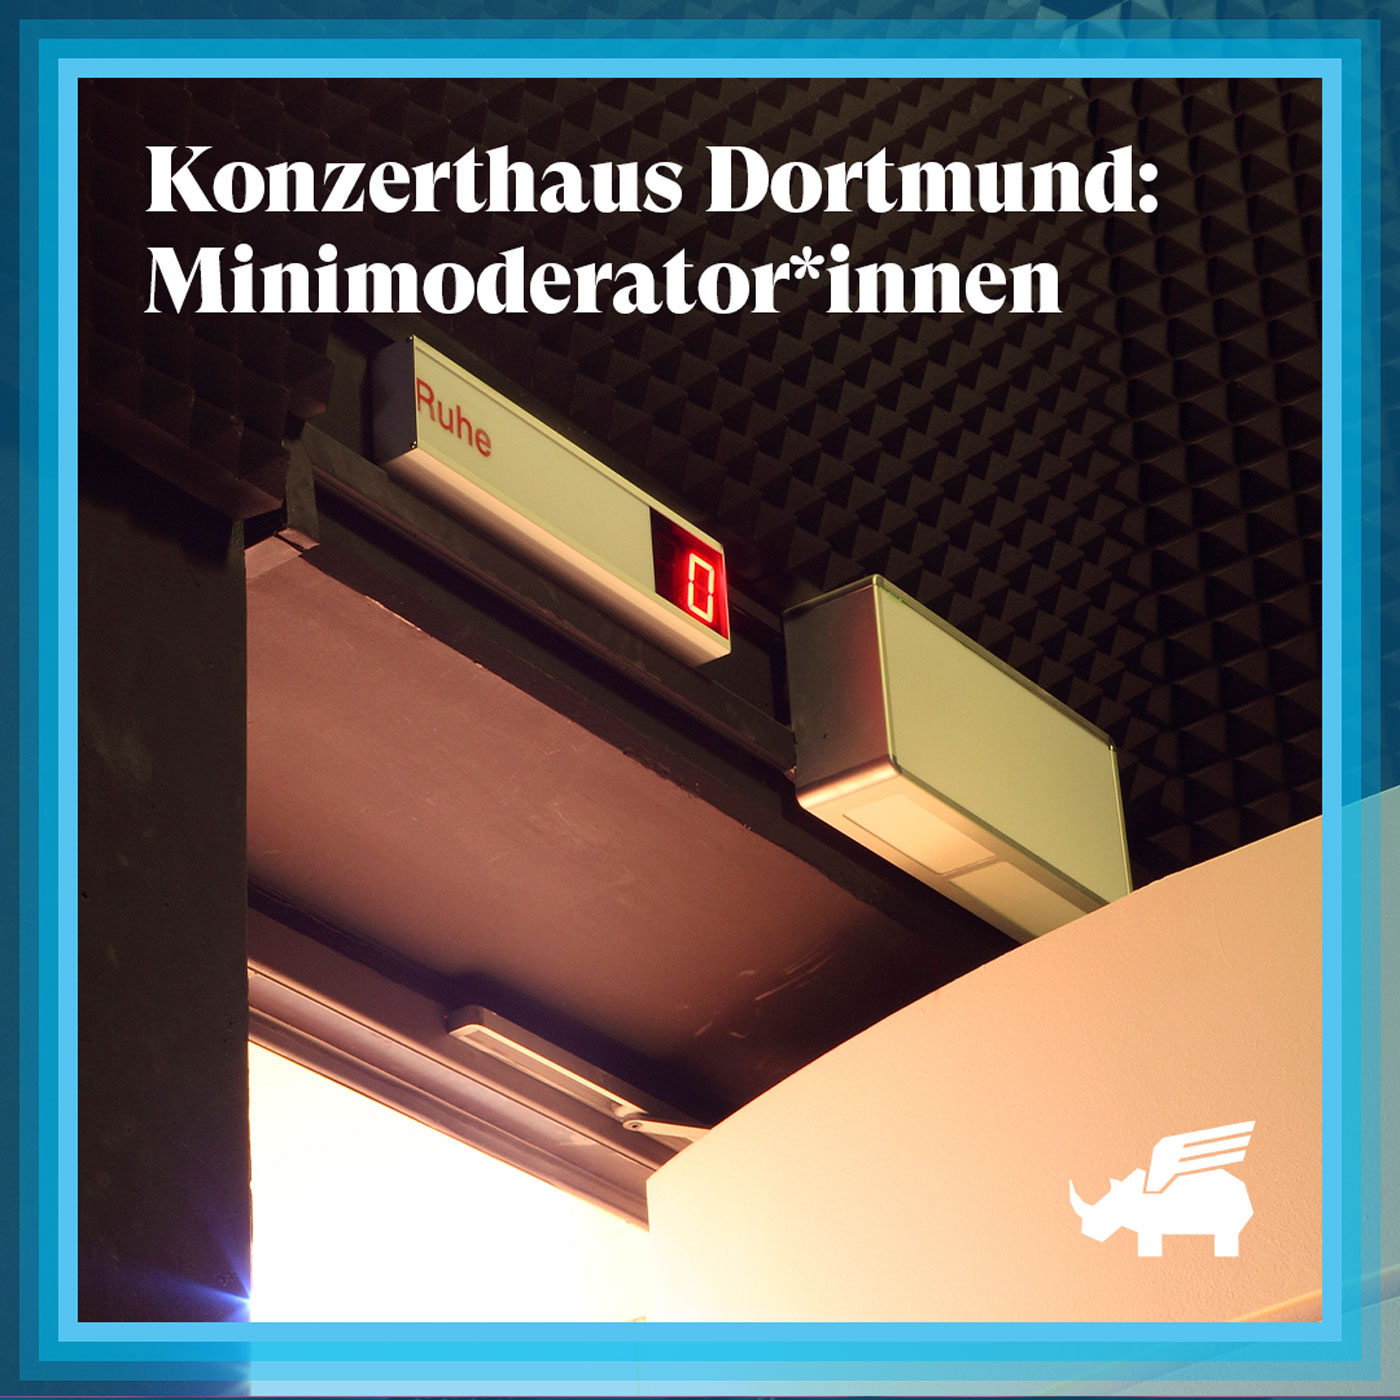 Konzerthaus Dortmund: Minimoderator*innen